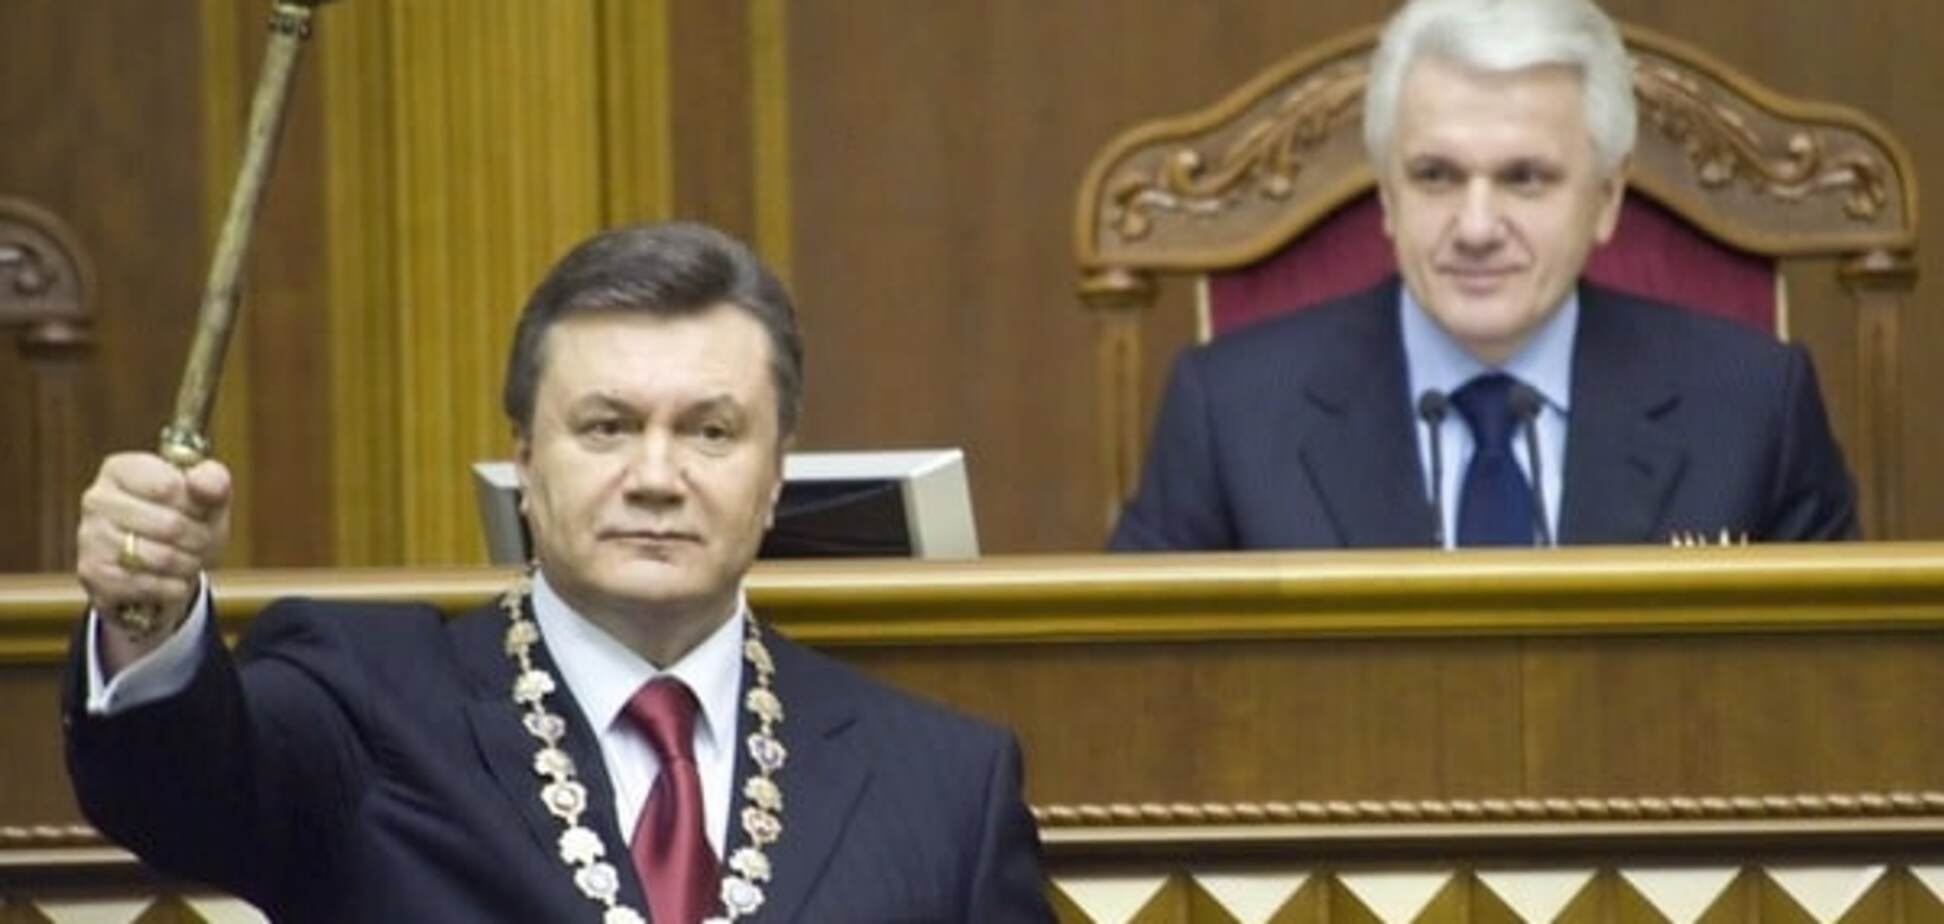 'Черная бухгалтерия' доказывает, что Янукович 'украл' победу Тимошенко в 2010 году - политологи